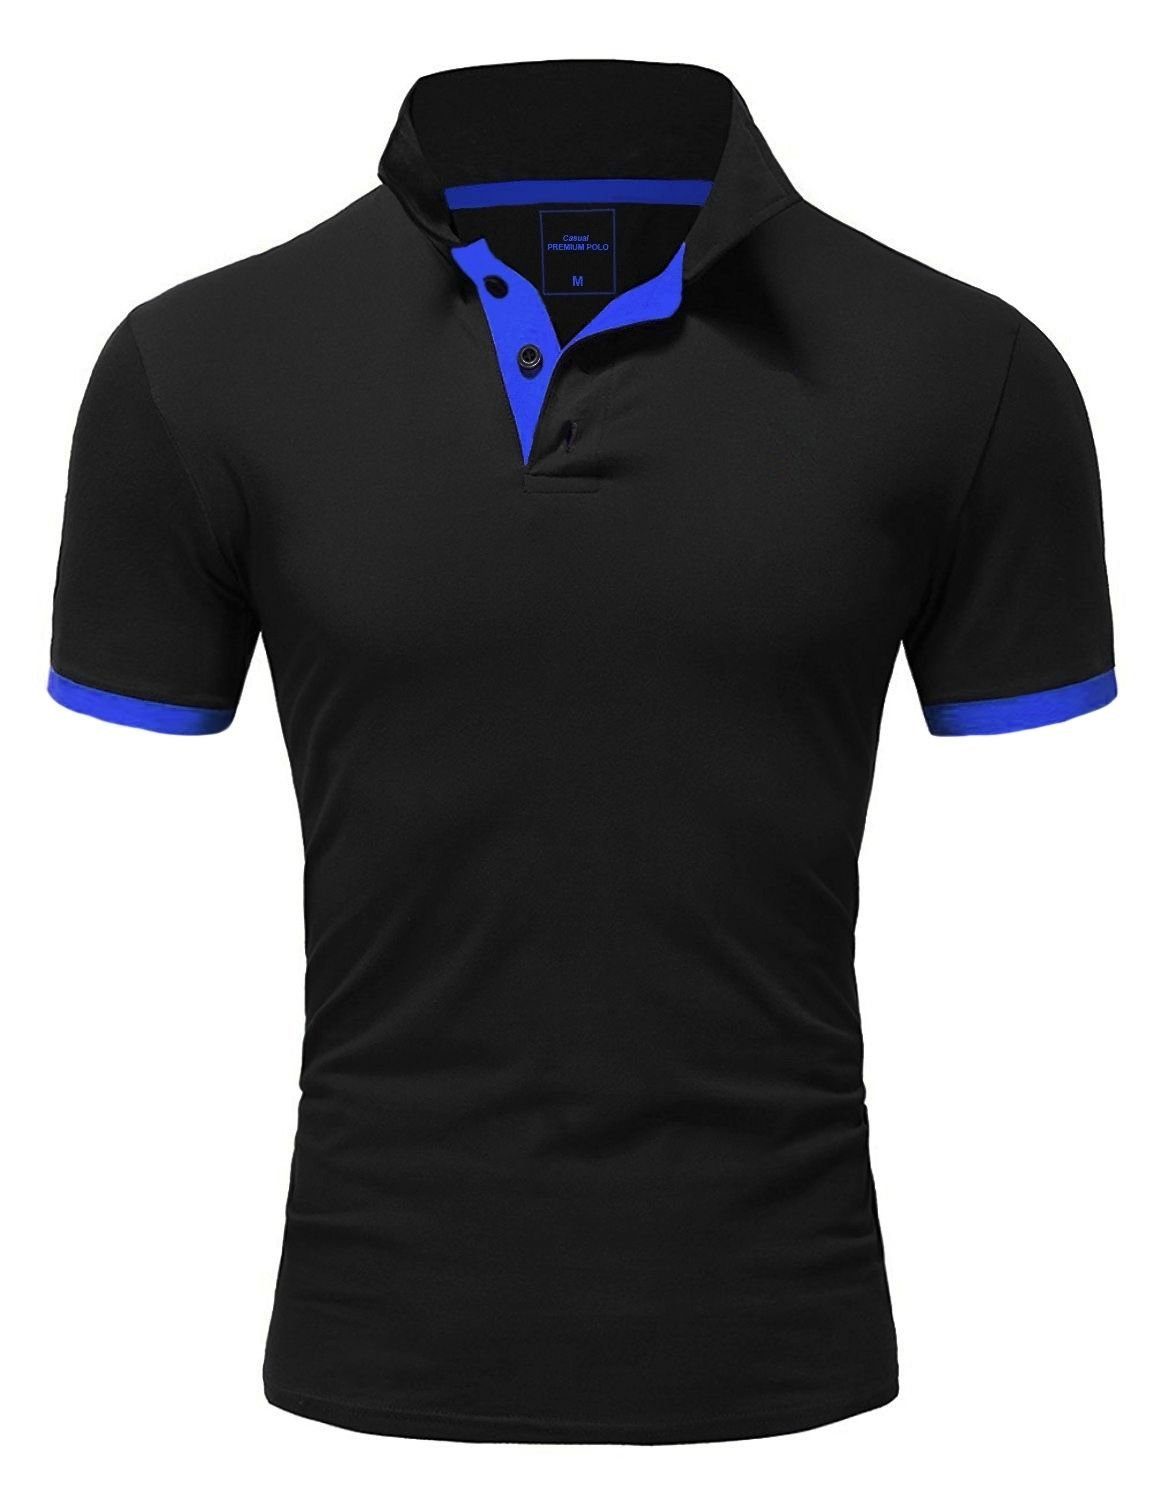 kontrastfarbigen BASE Poloshirt Details schwarz-blau mit behype